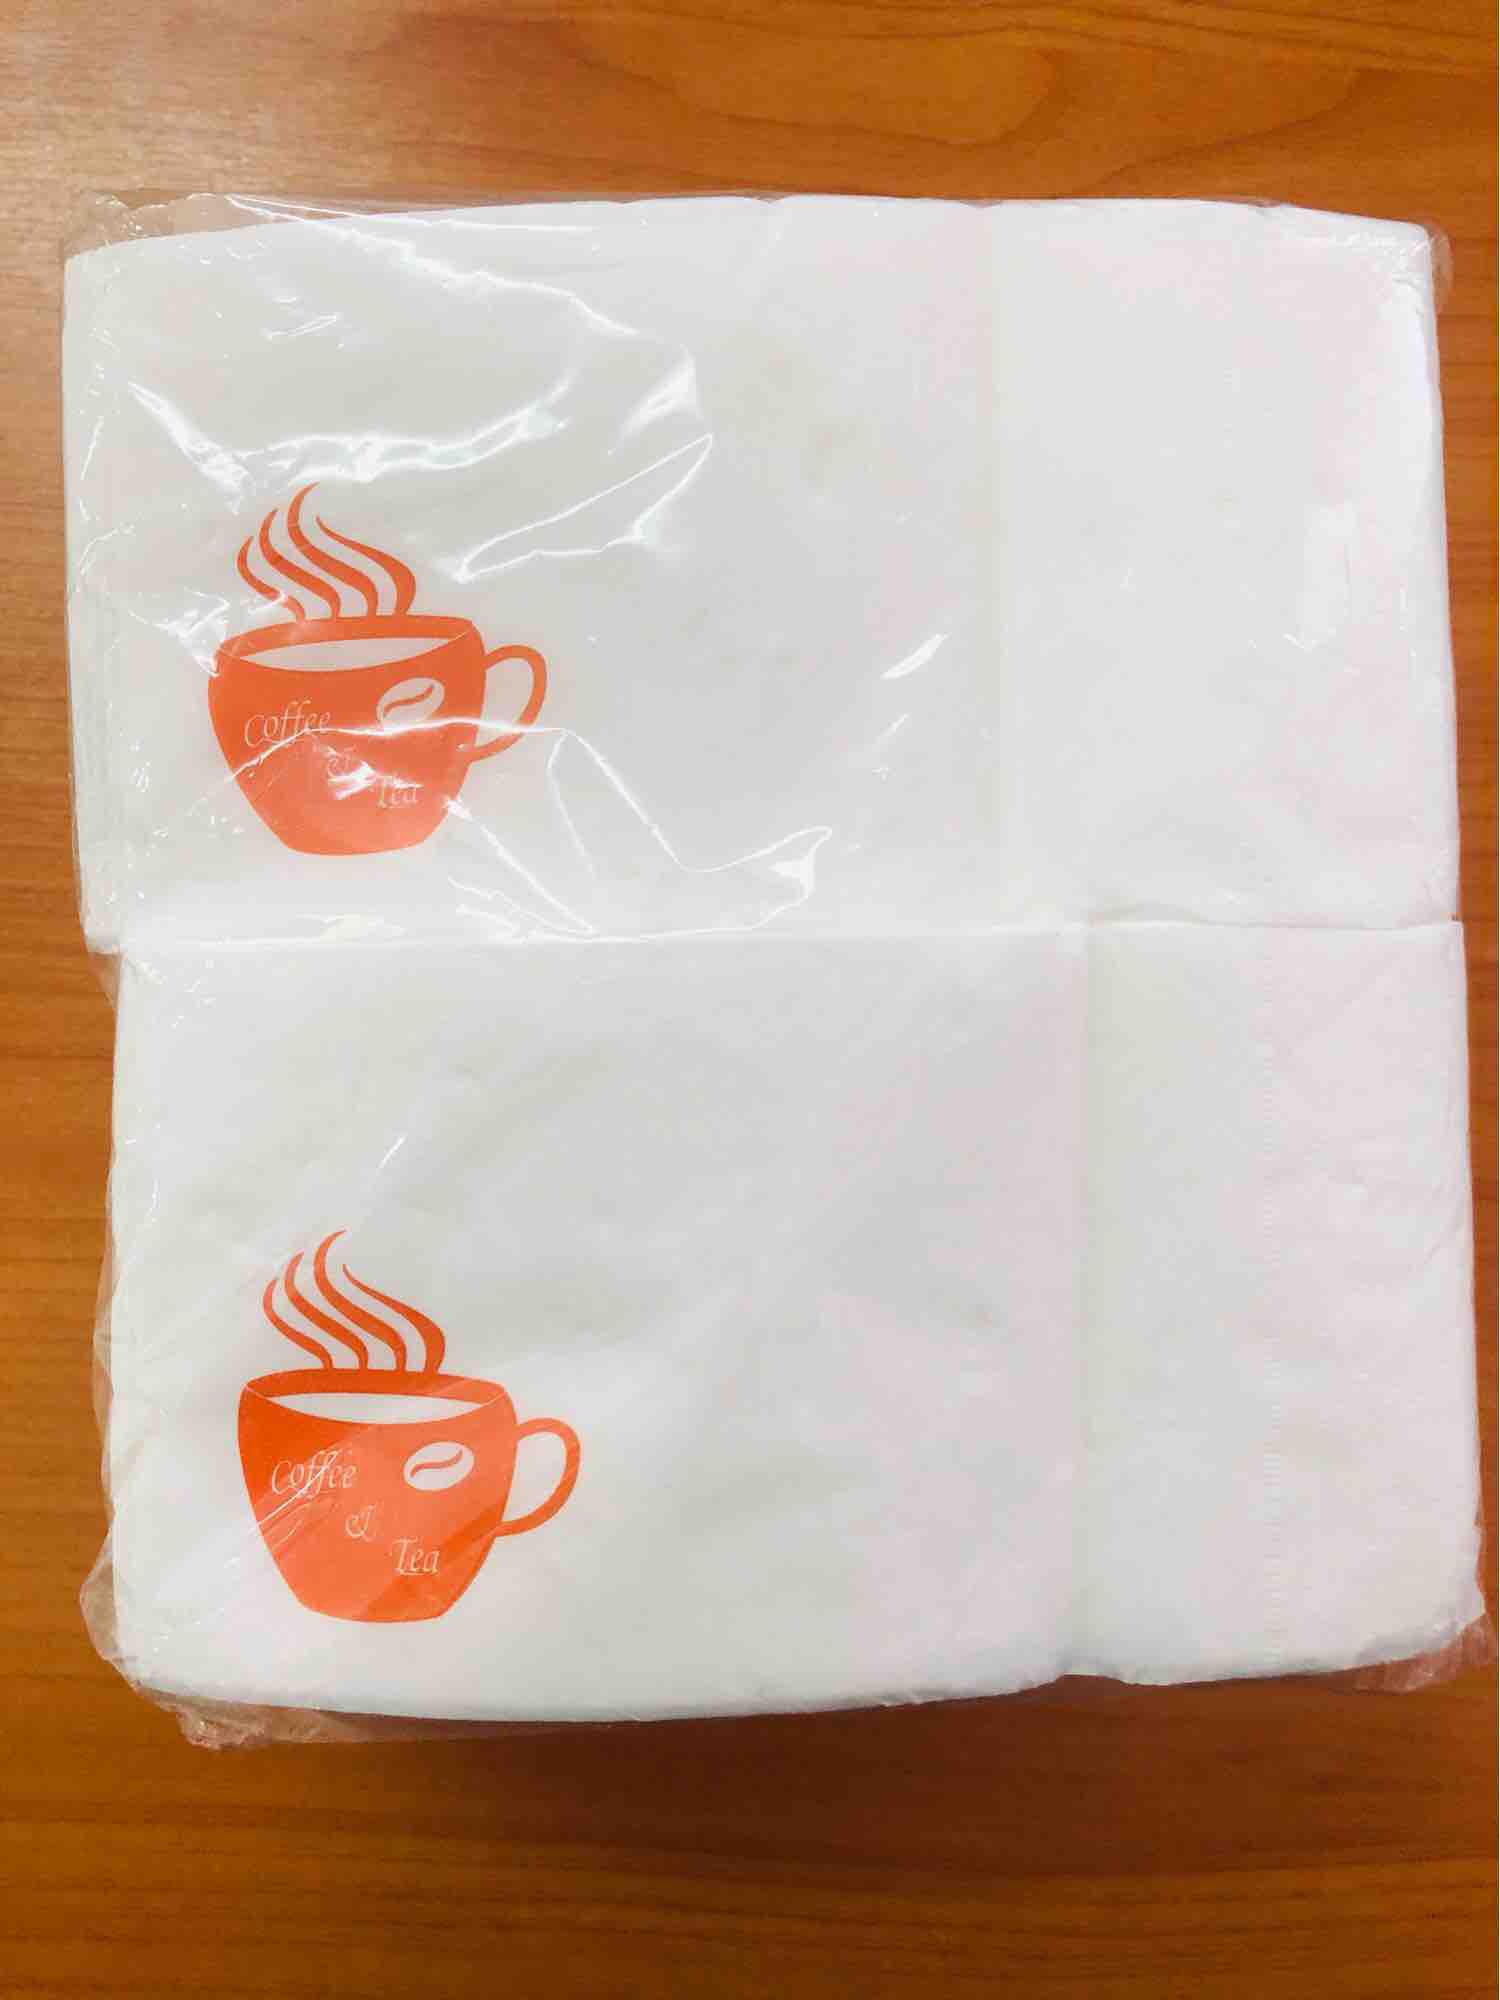 กระดาษเนปกิ้น กระดาษเช็ดปาก  กระดาษพันแก้วกาแฟ กระดาษทิชชู สีขาวพิมพ์ลายคำว่า  Coffee & Tea  (พิมพ์ลายสีส้ม)บรรจุ 200 แผ่นต่อห่อ